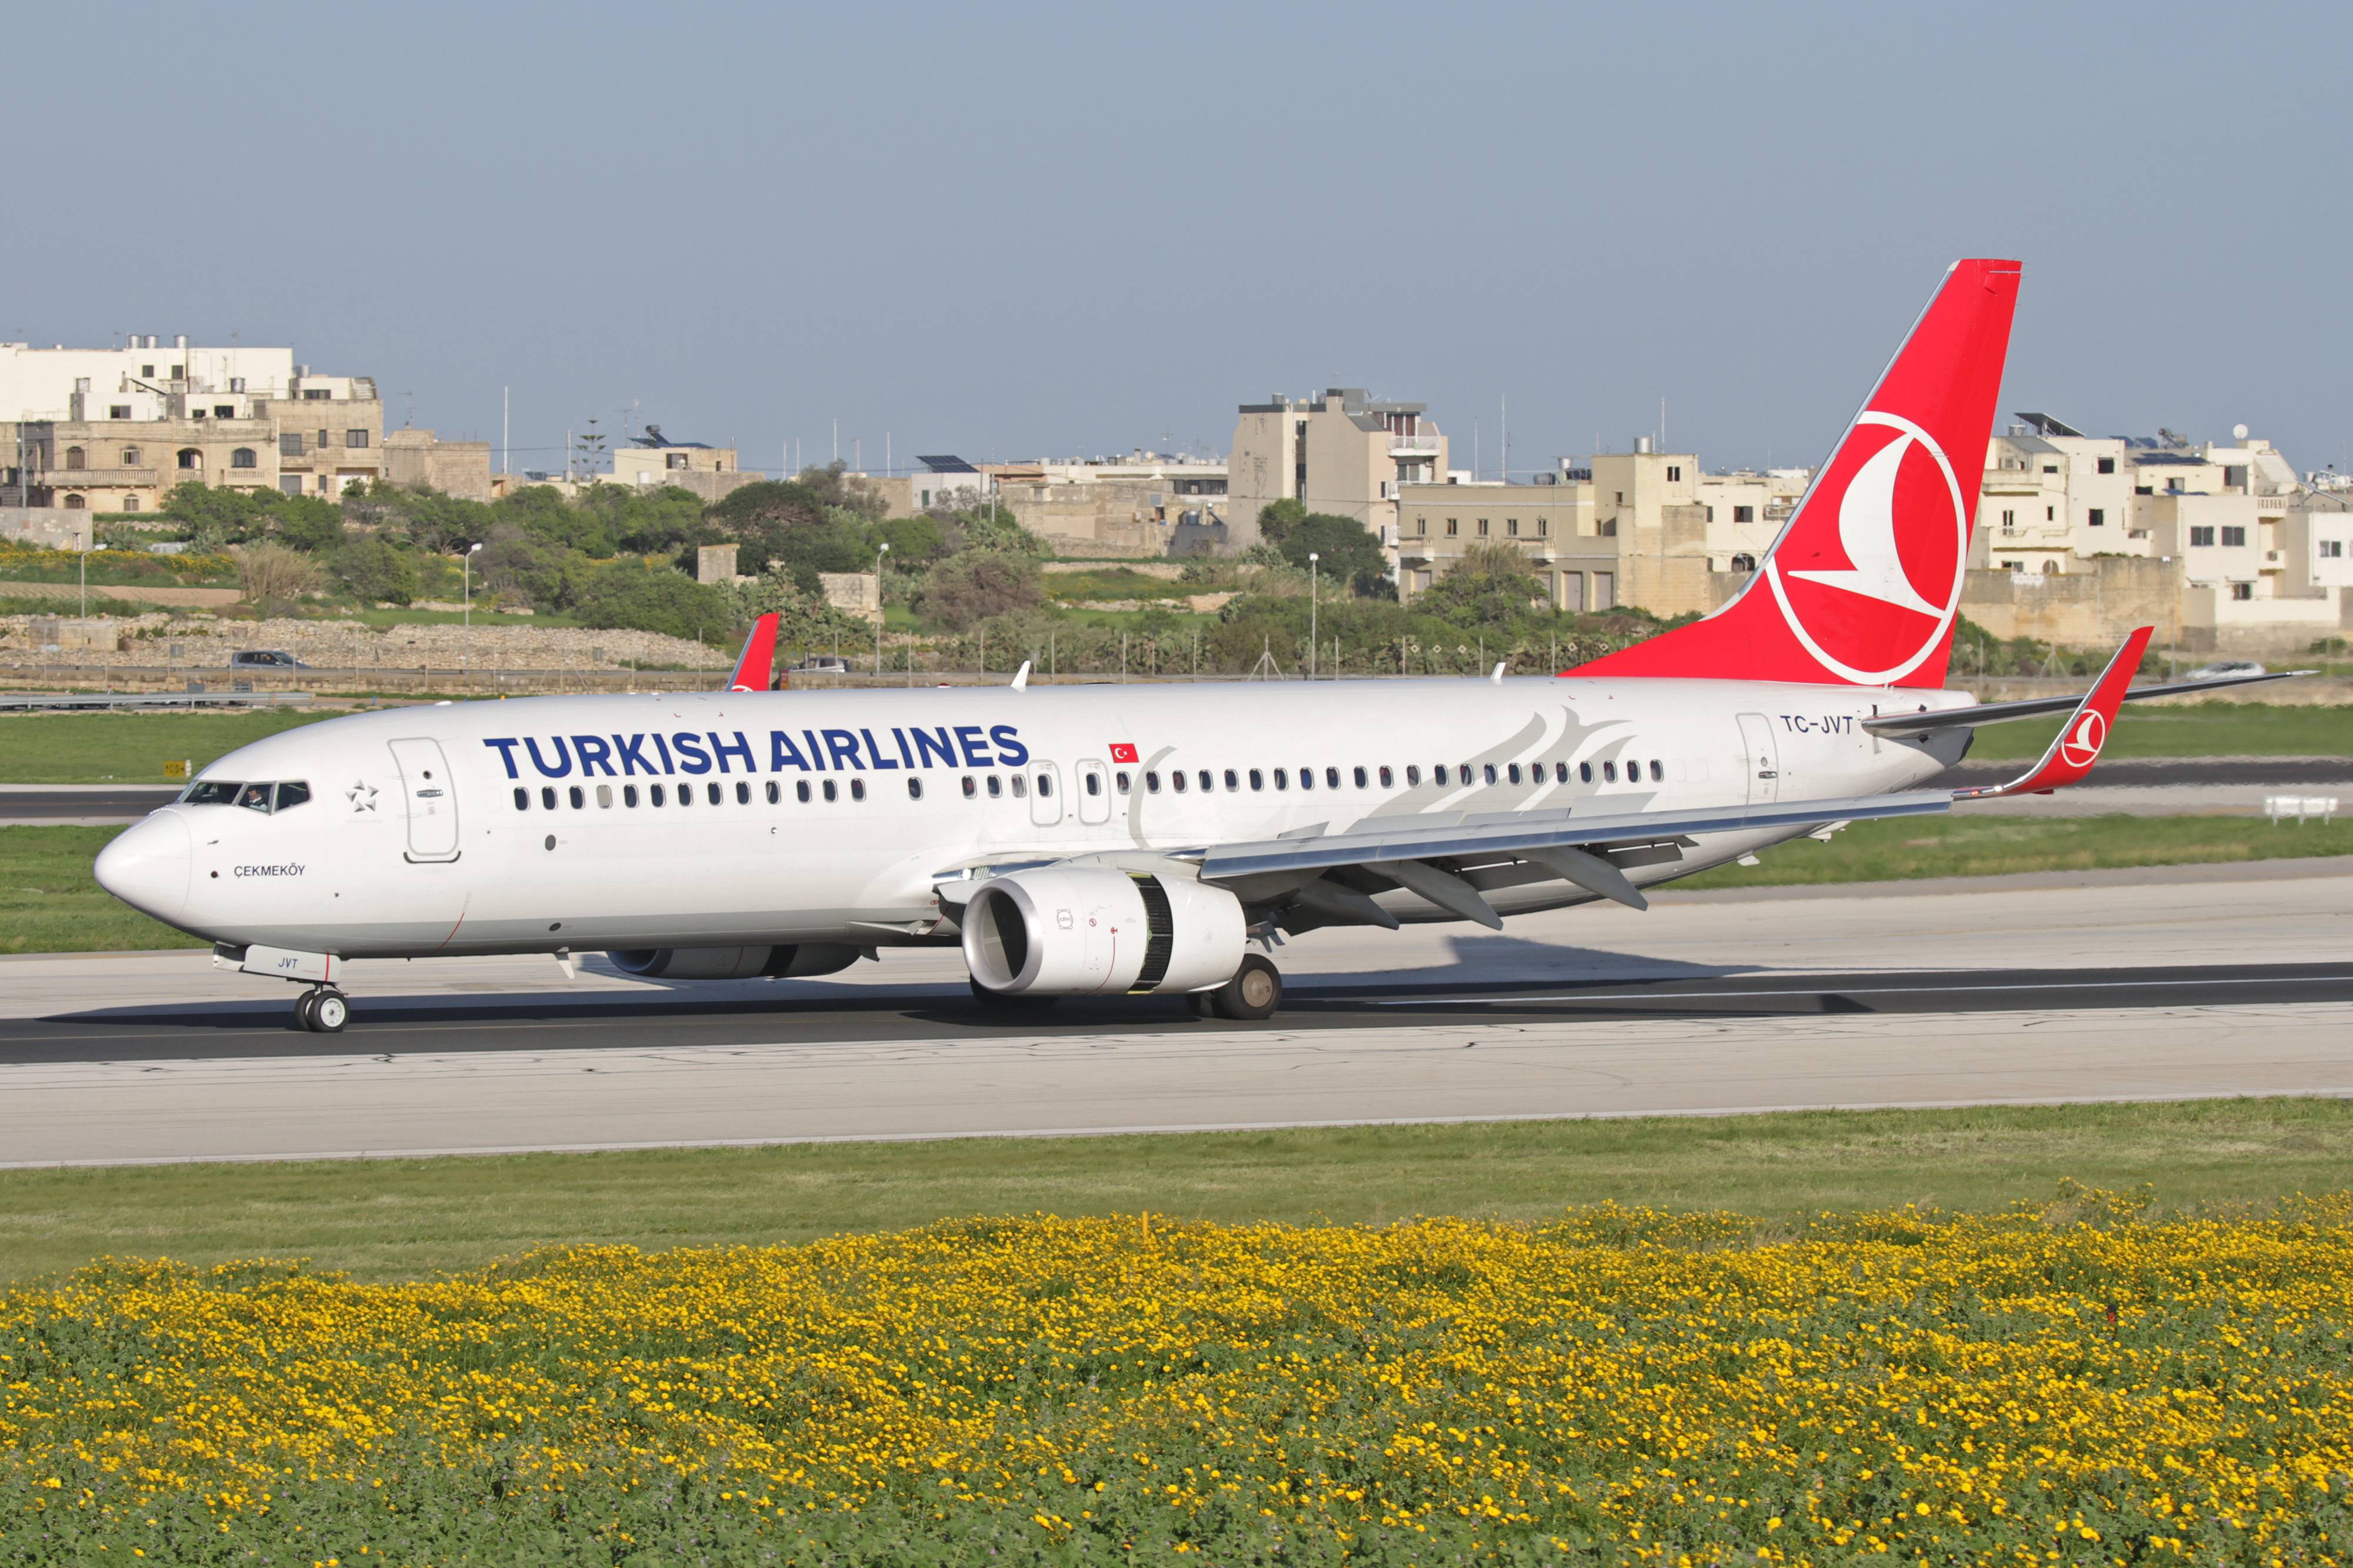 Турецкие авиалинии — turkish airlines